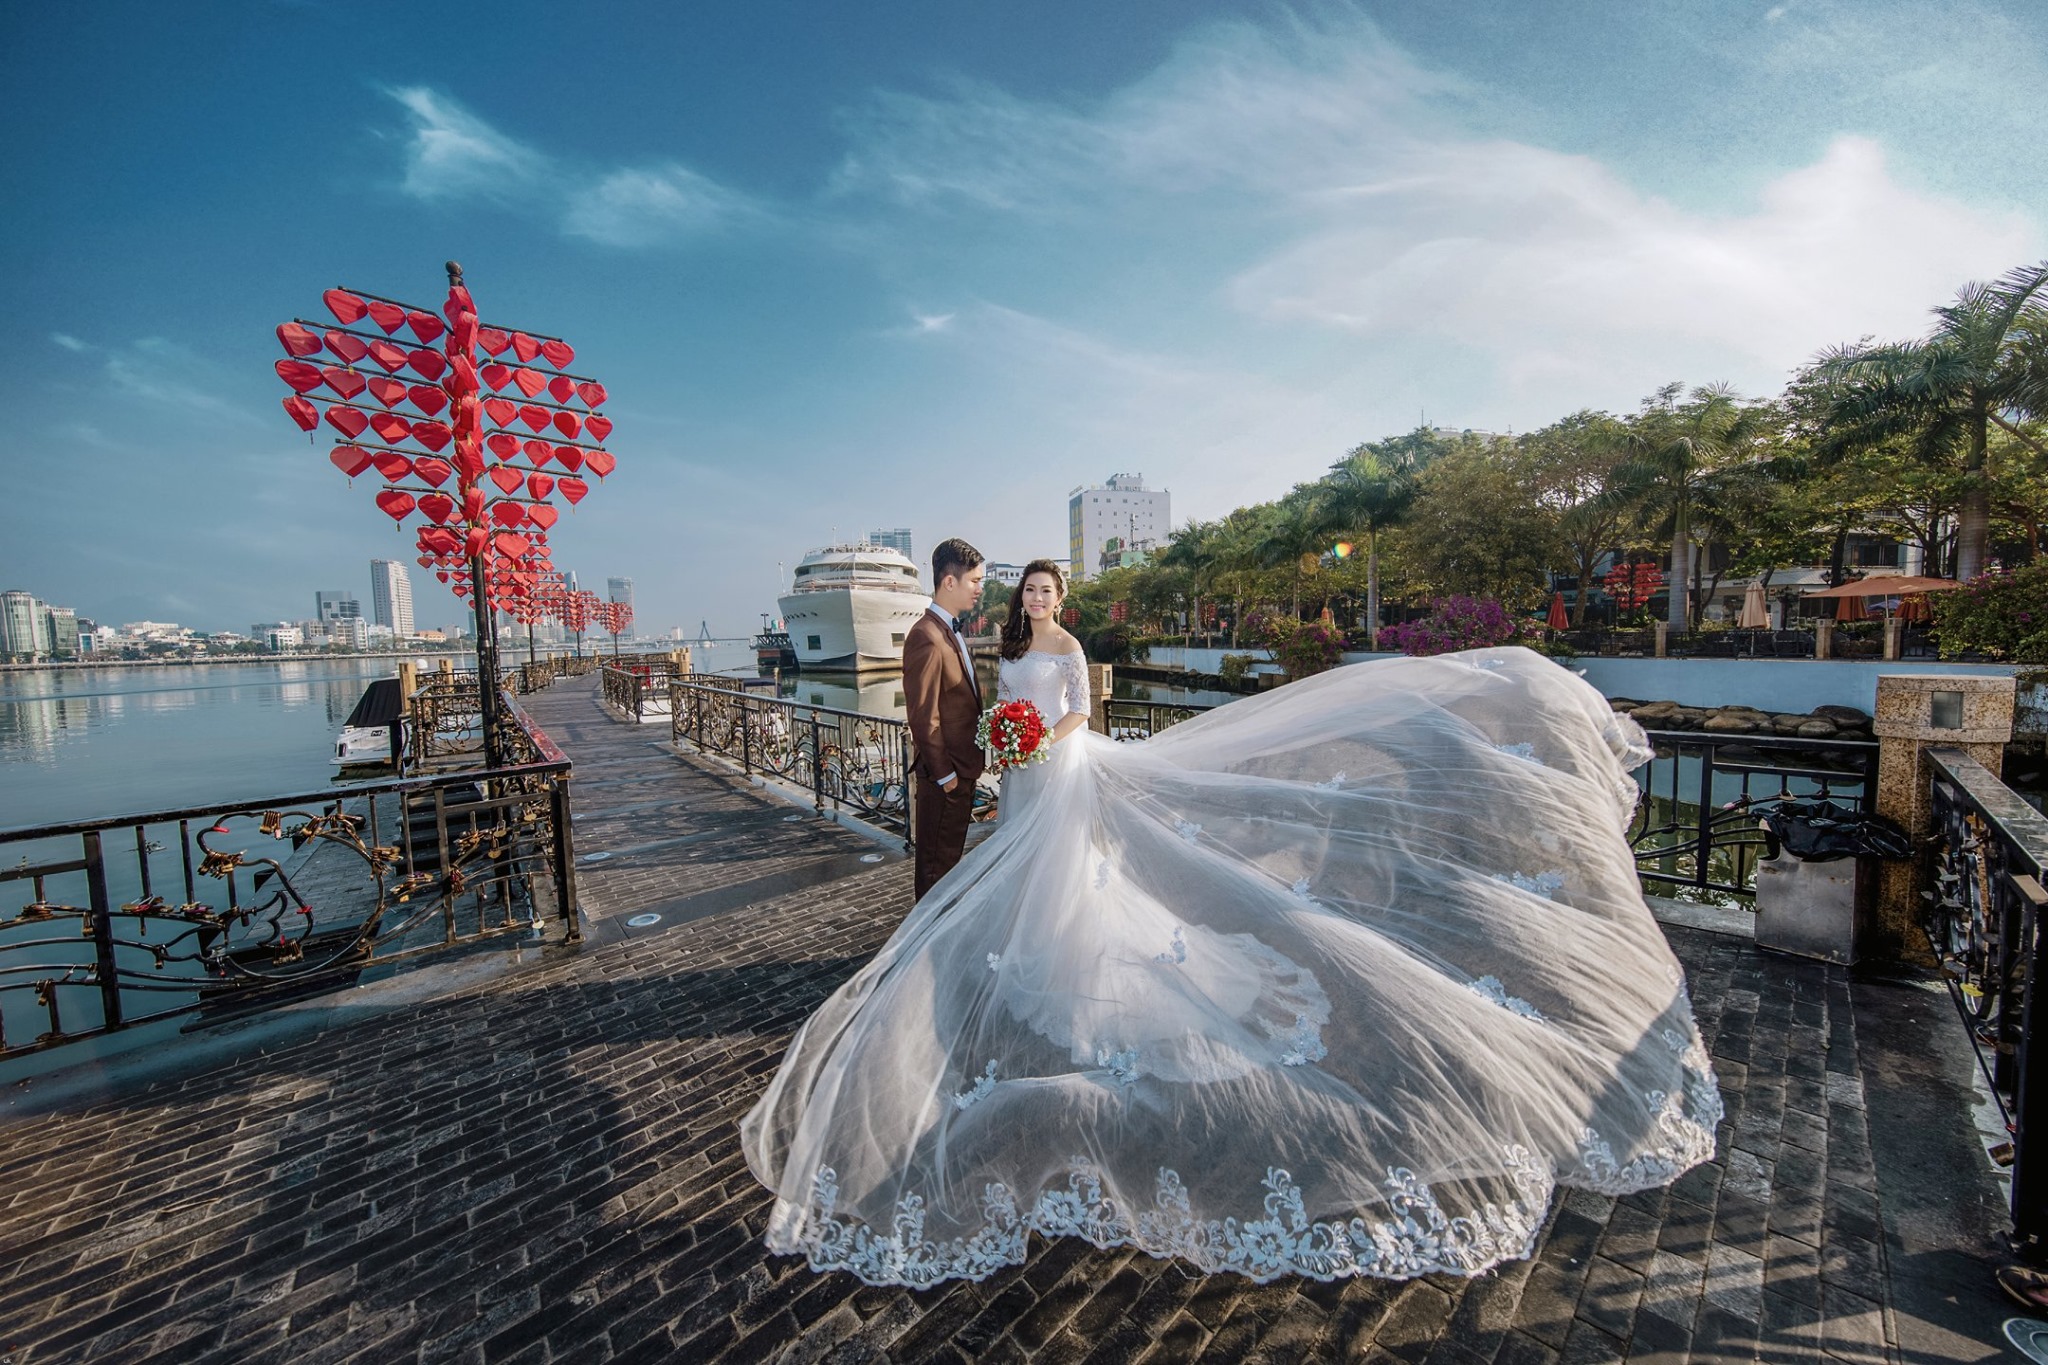 Pre wedding Đà Nẵng - Bà Nà Hills - Hội An - Lý Sơn